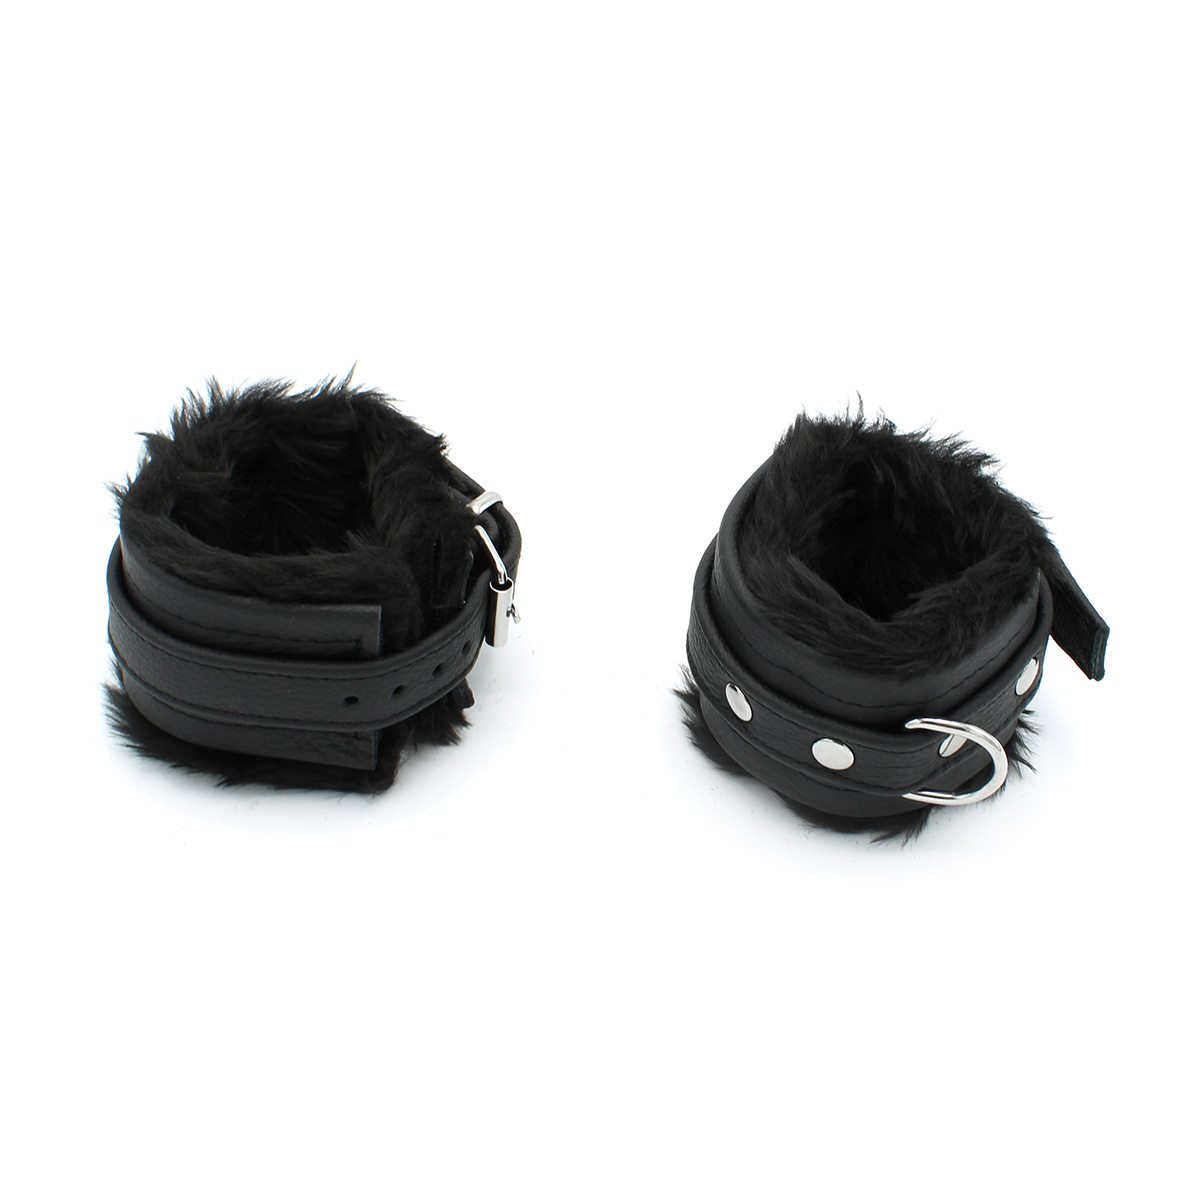 Fluffy-Inside-Black-Leather-Handcuffs-134-KIO-0344-3